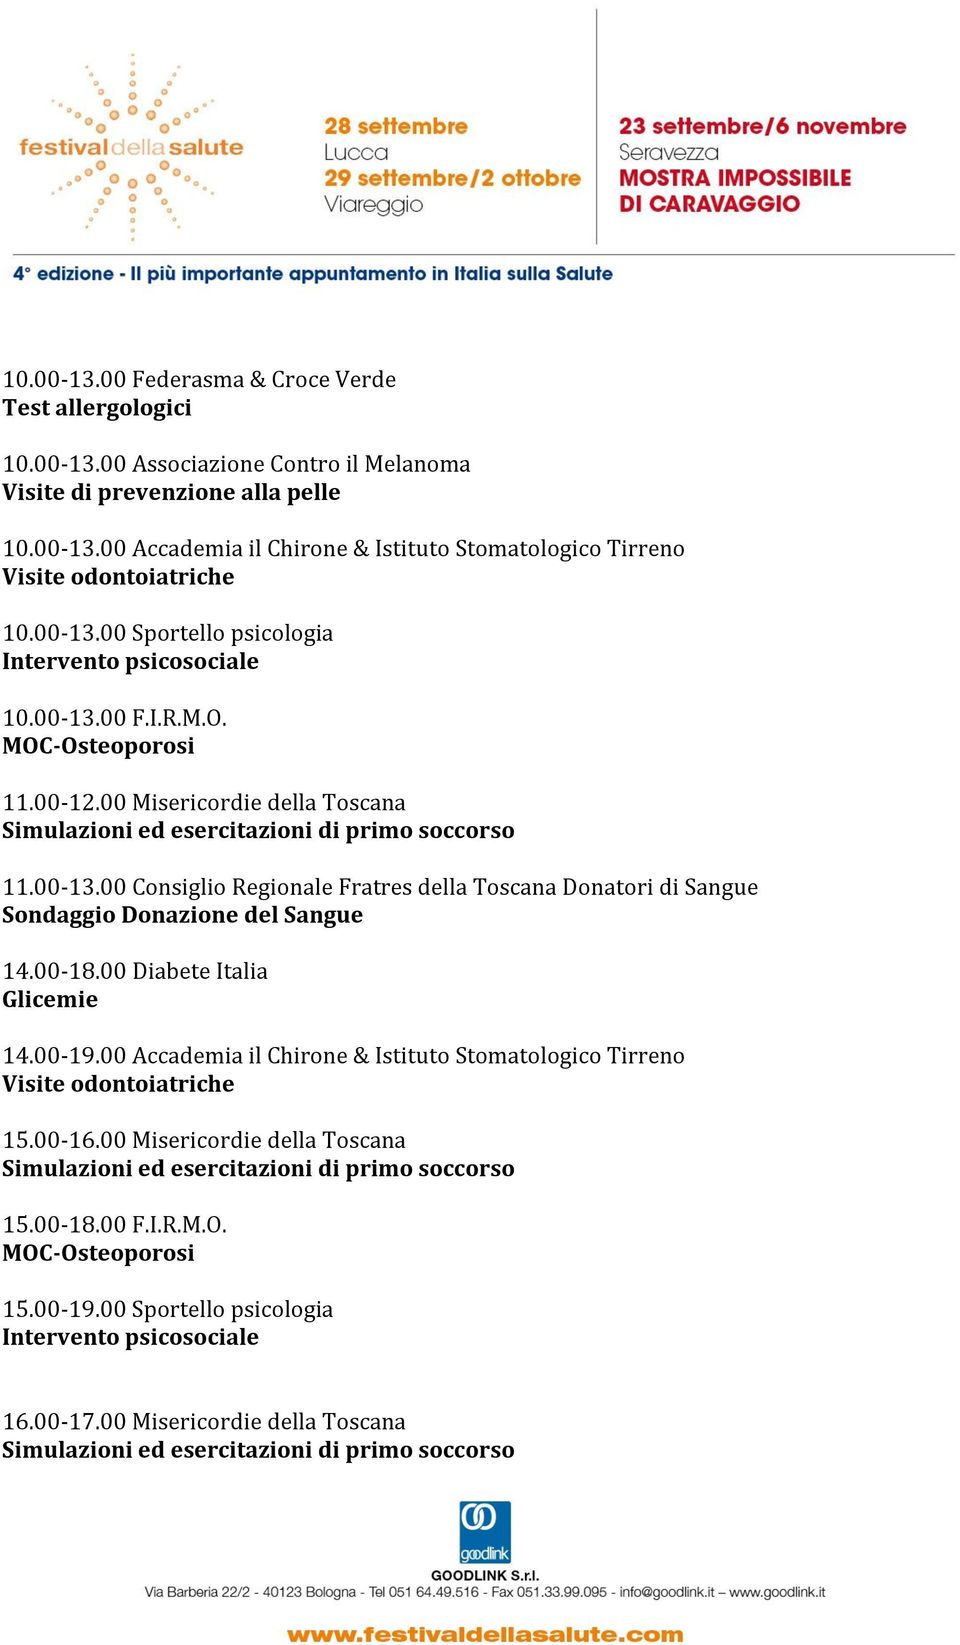 00-18.00 Diabete Italia 14.00-19.00 Accademia il Chirone & Istituto Stomatologico Tirreno 15.00-16.00 Misericordie della Toscana 15.00-18.00 F.